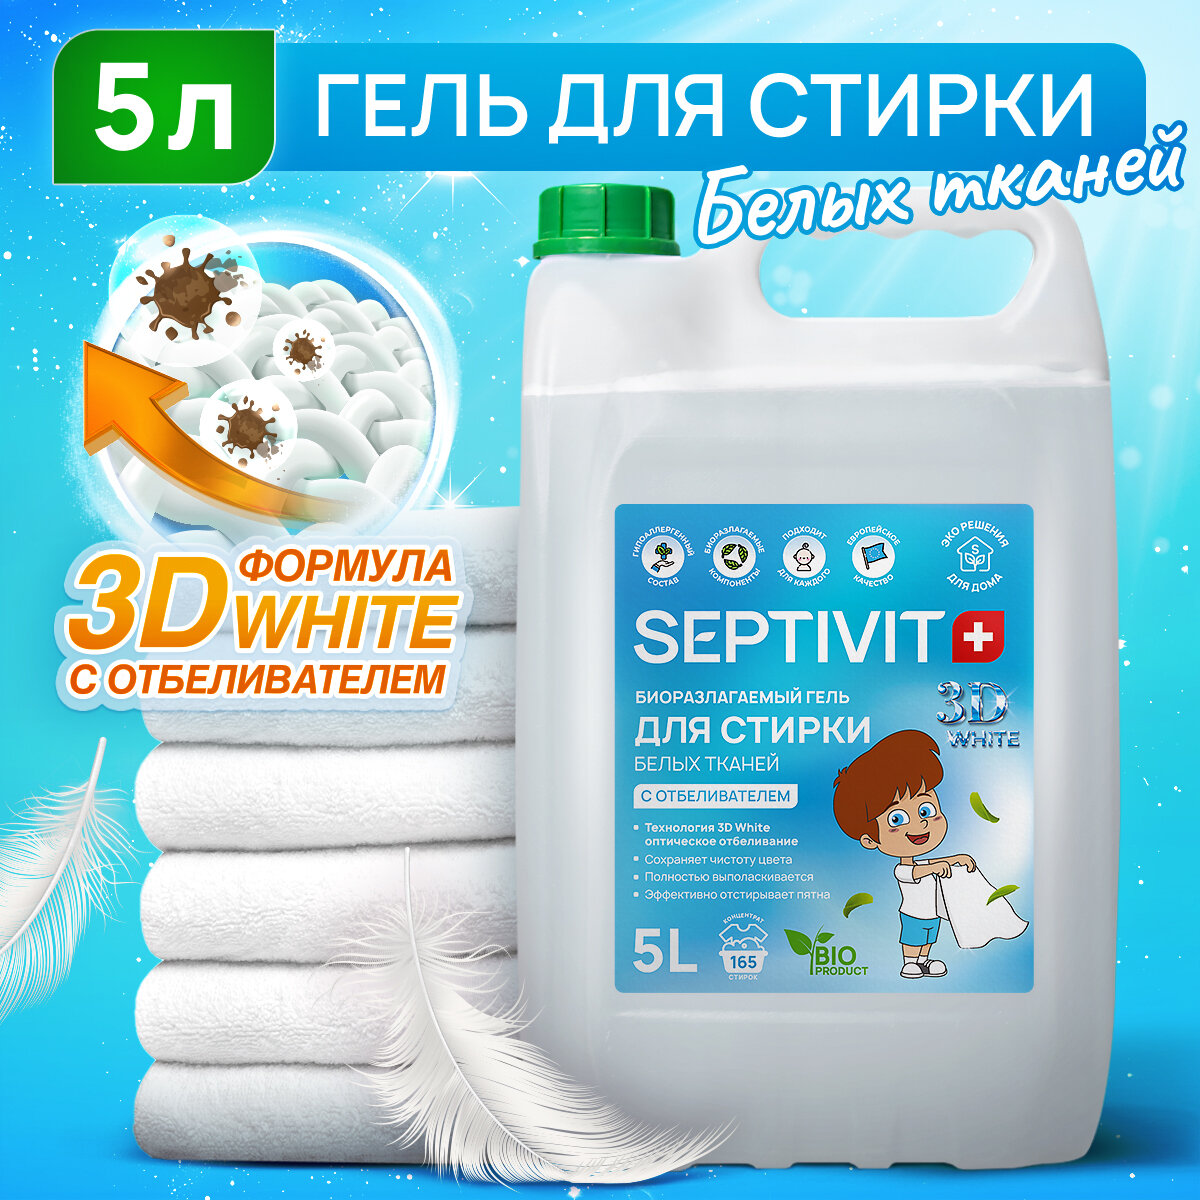 Гель для стирки Белого белья SEPTIVIT Premium / Гель для стирки детского белья гипоаллергенный / Средство для стирки, 5л